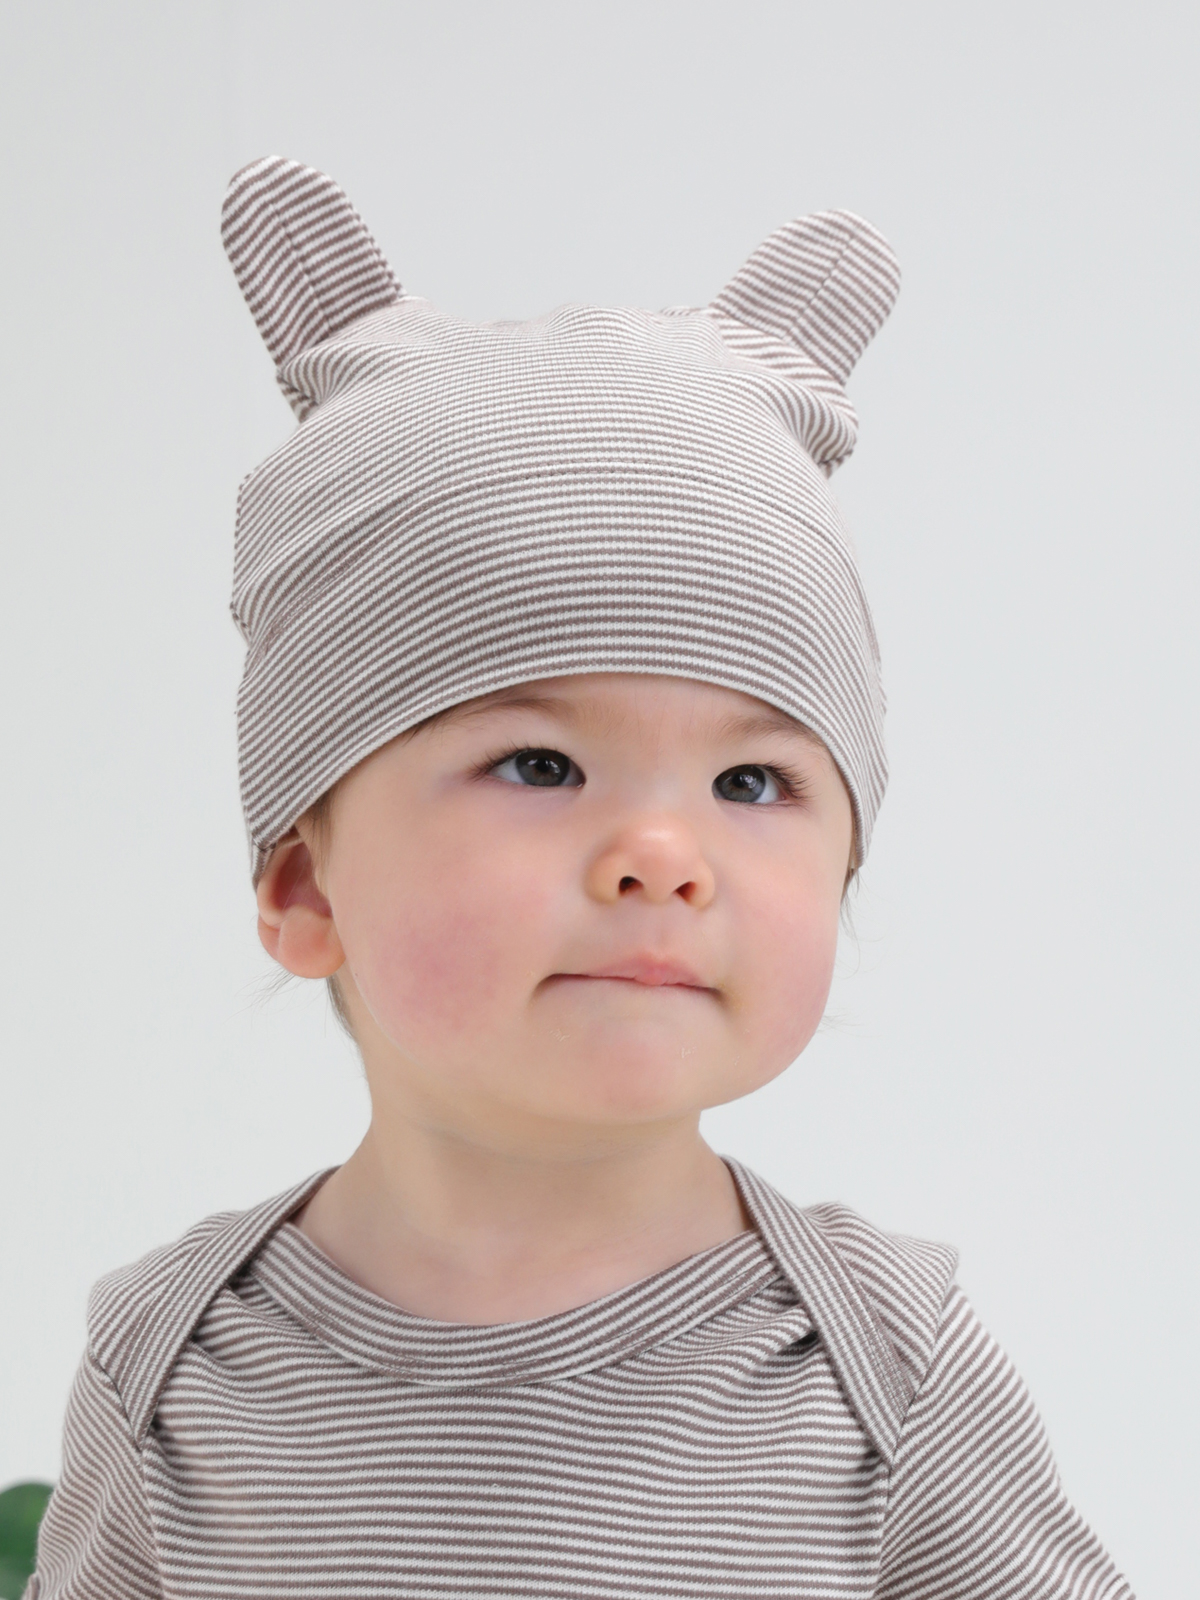 Cartoon Fancy Dress Baby Hat Babybugz Little Hat with Ears BZ51 